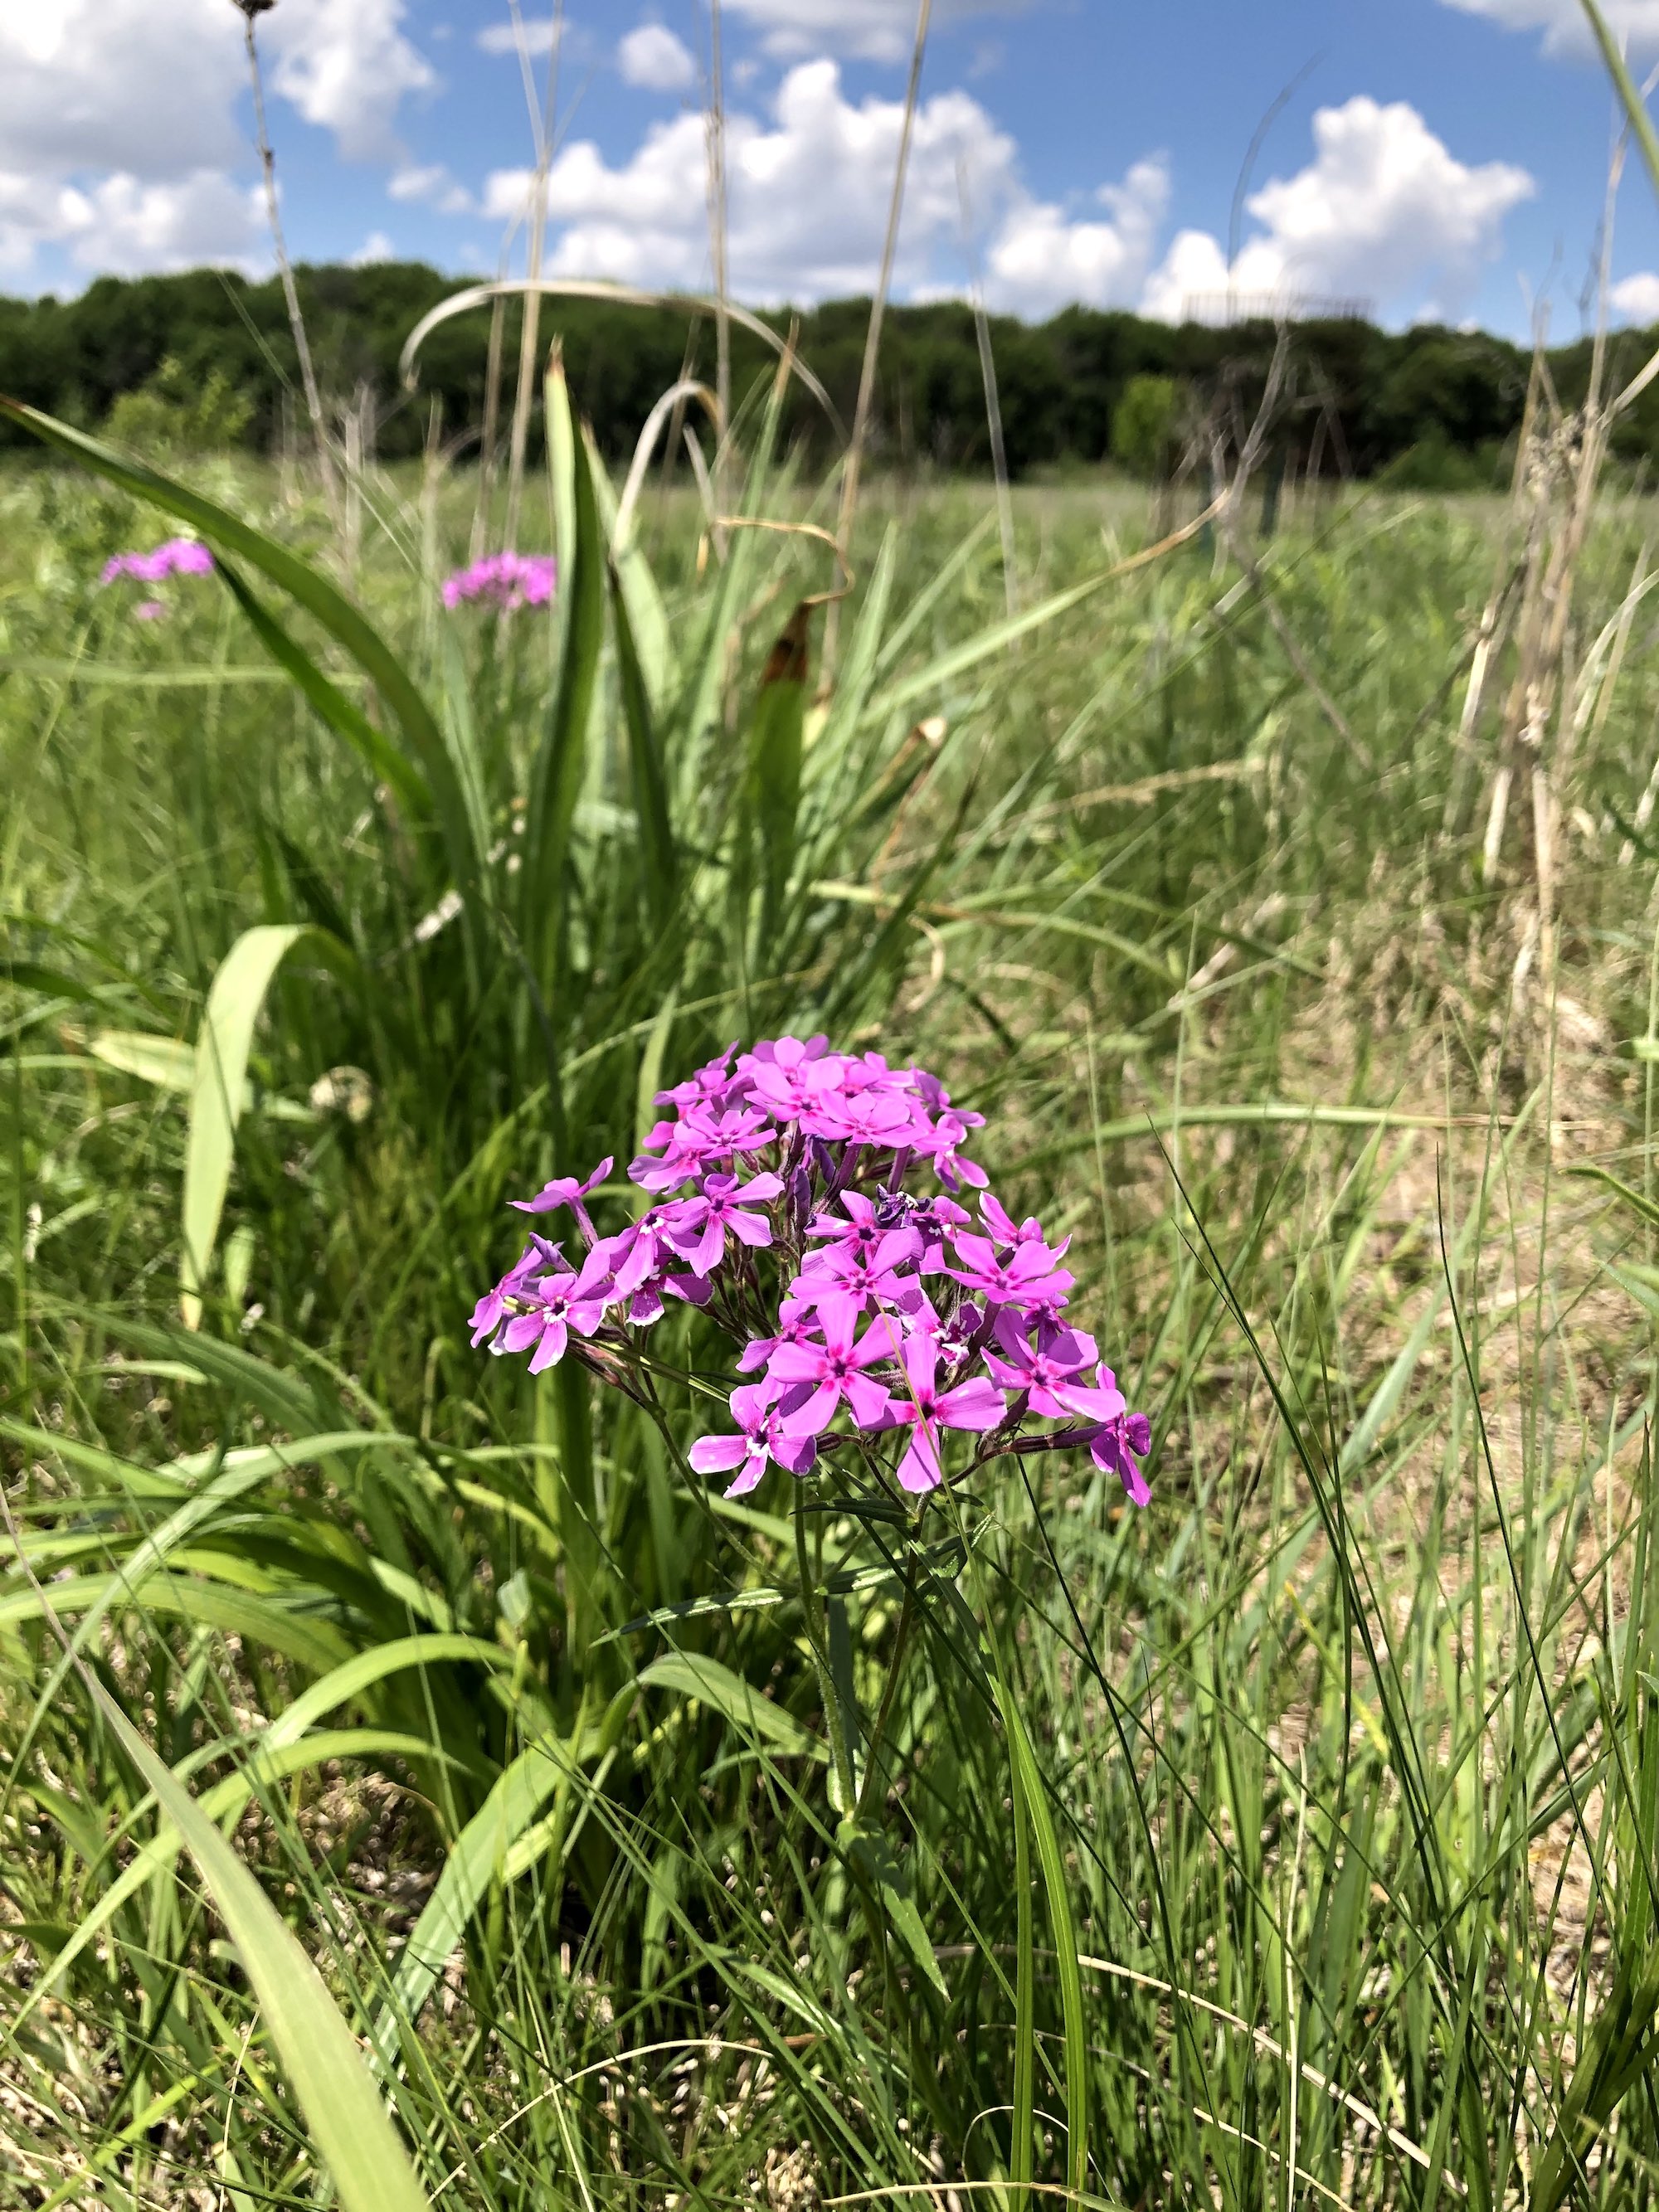 Prairie Phlox in UW Arboretum's Greene Prairie in Madison, Wisconsin on June 1, 2021.